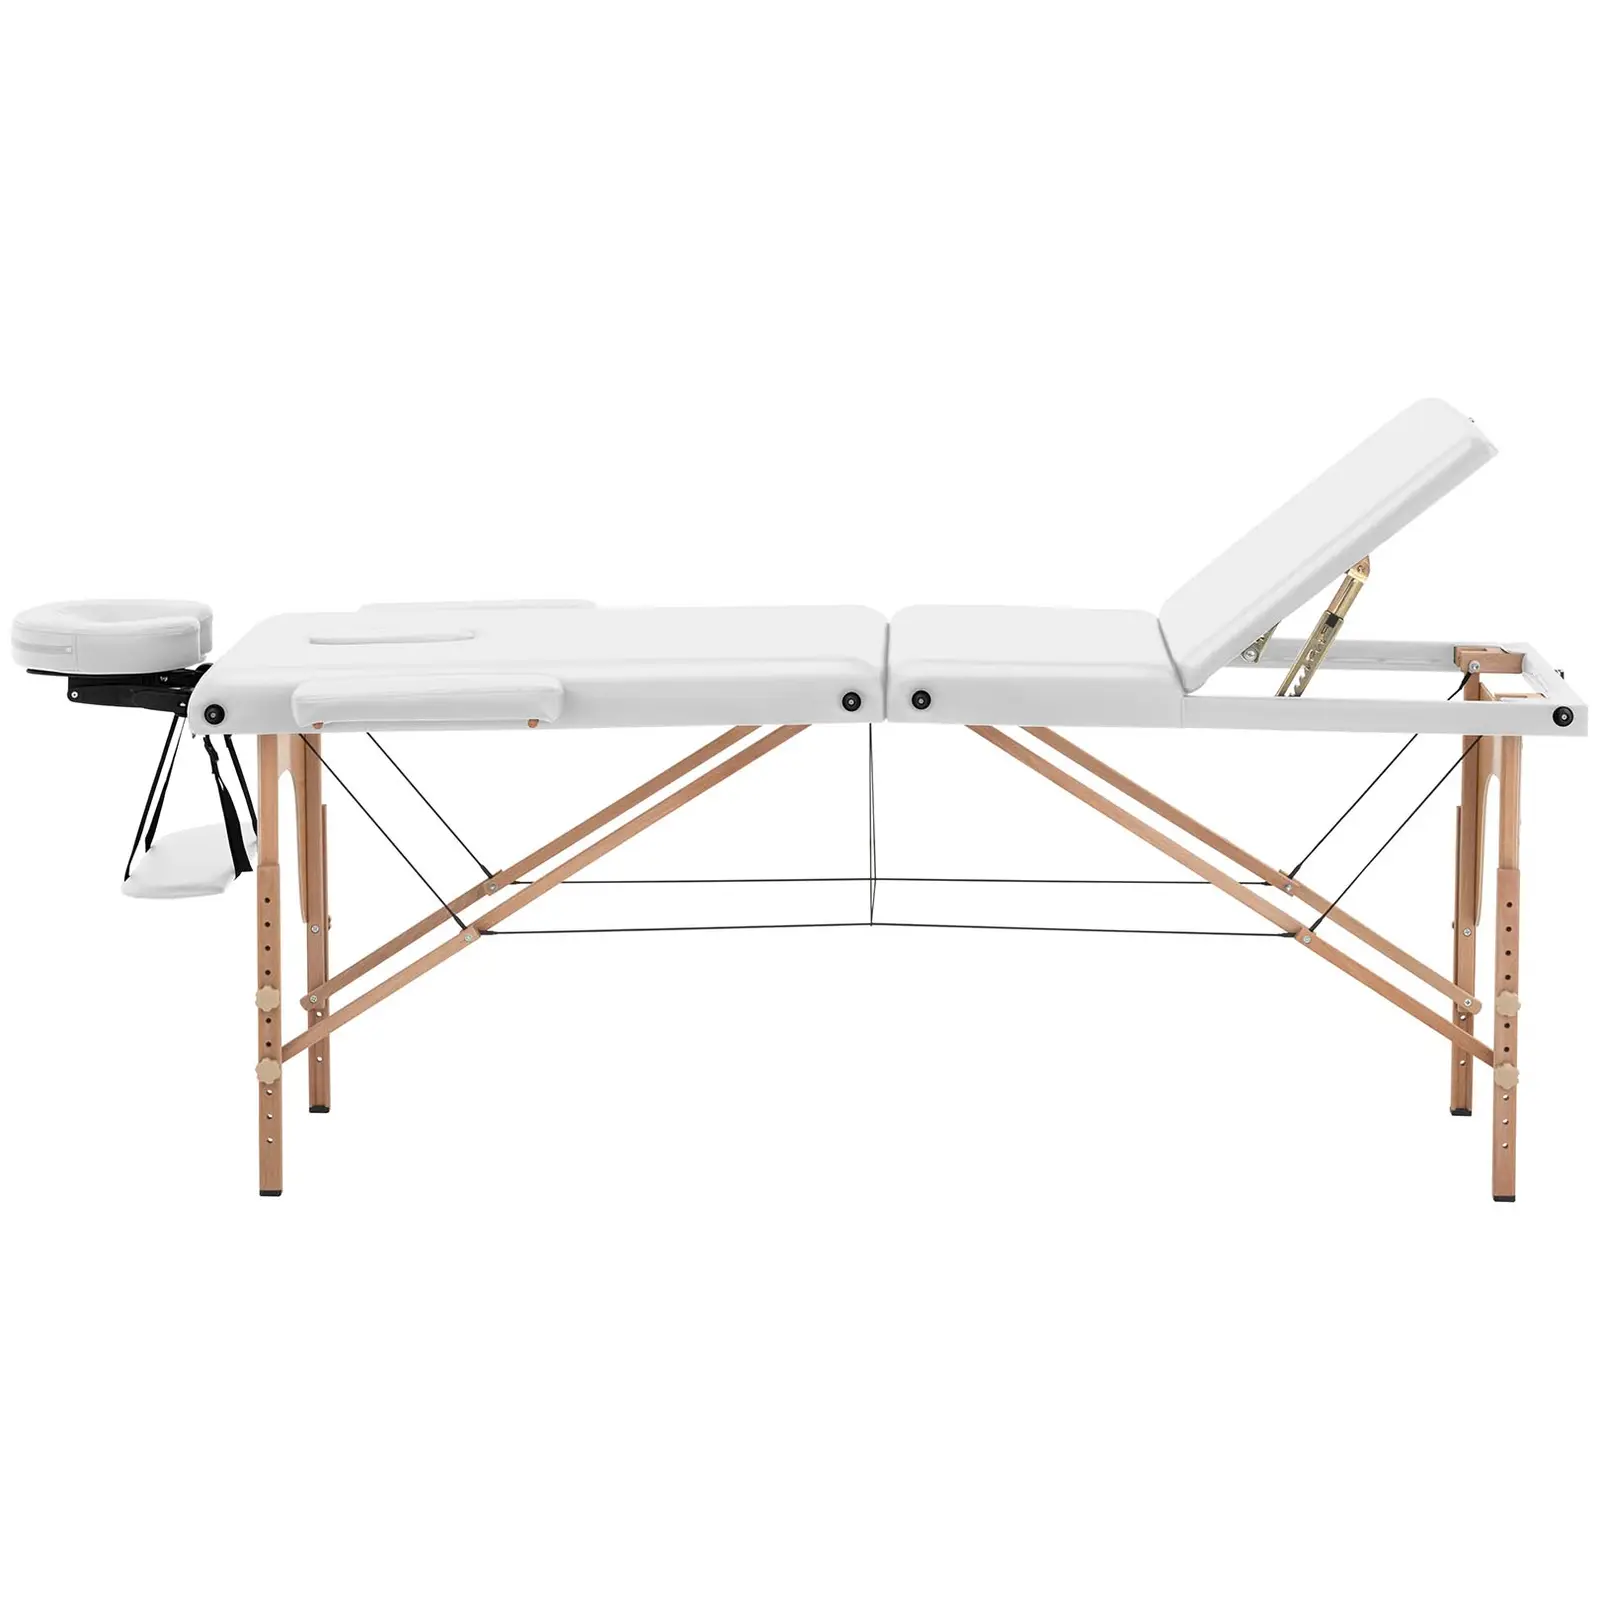 Łóżko do masażu składane - bardzo szerokie (70 cm) - odchylany podnóżek - drewno bukowe - białe